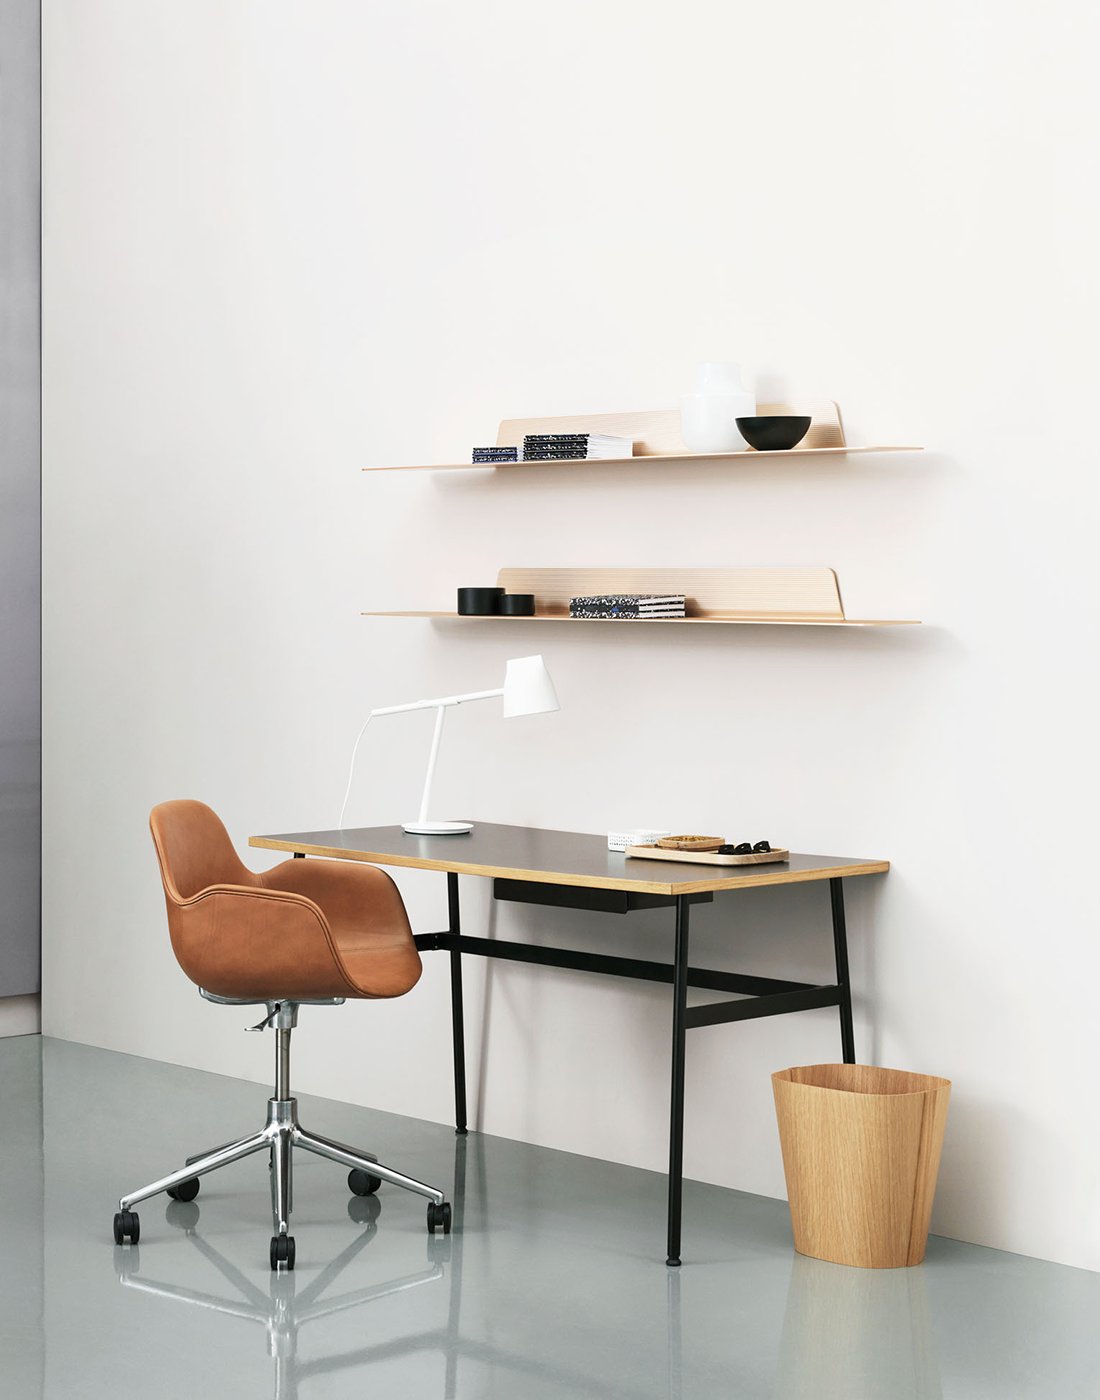 Büro minimalistisch eingerichtet im skandinavischen Stil